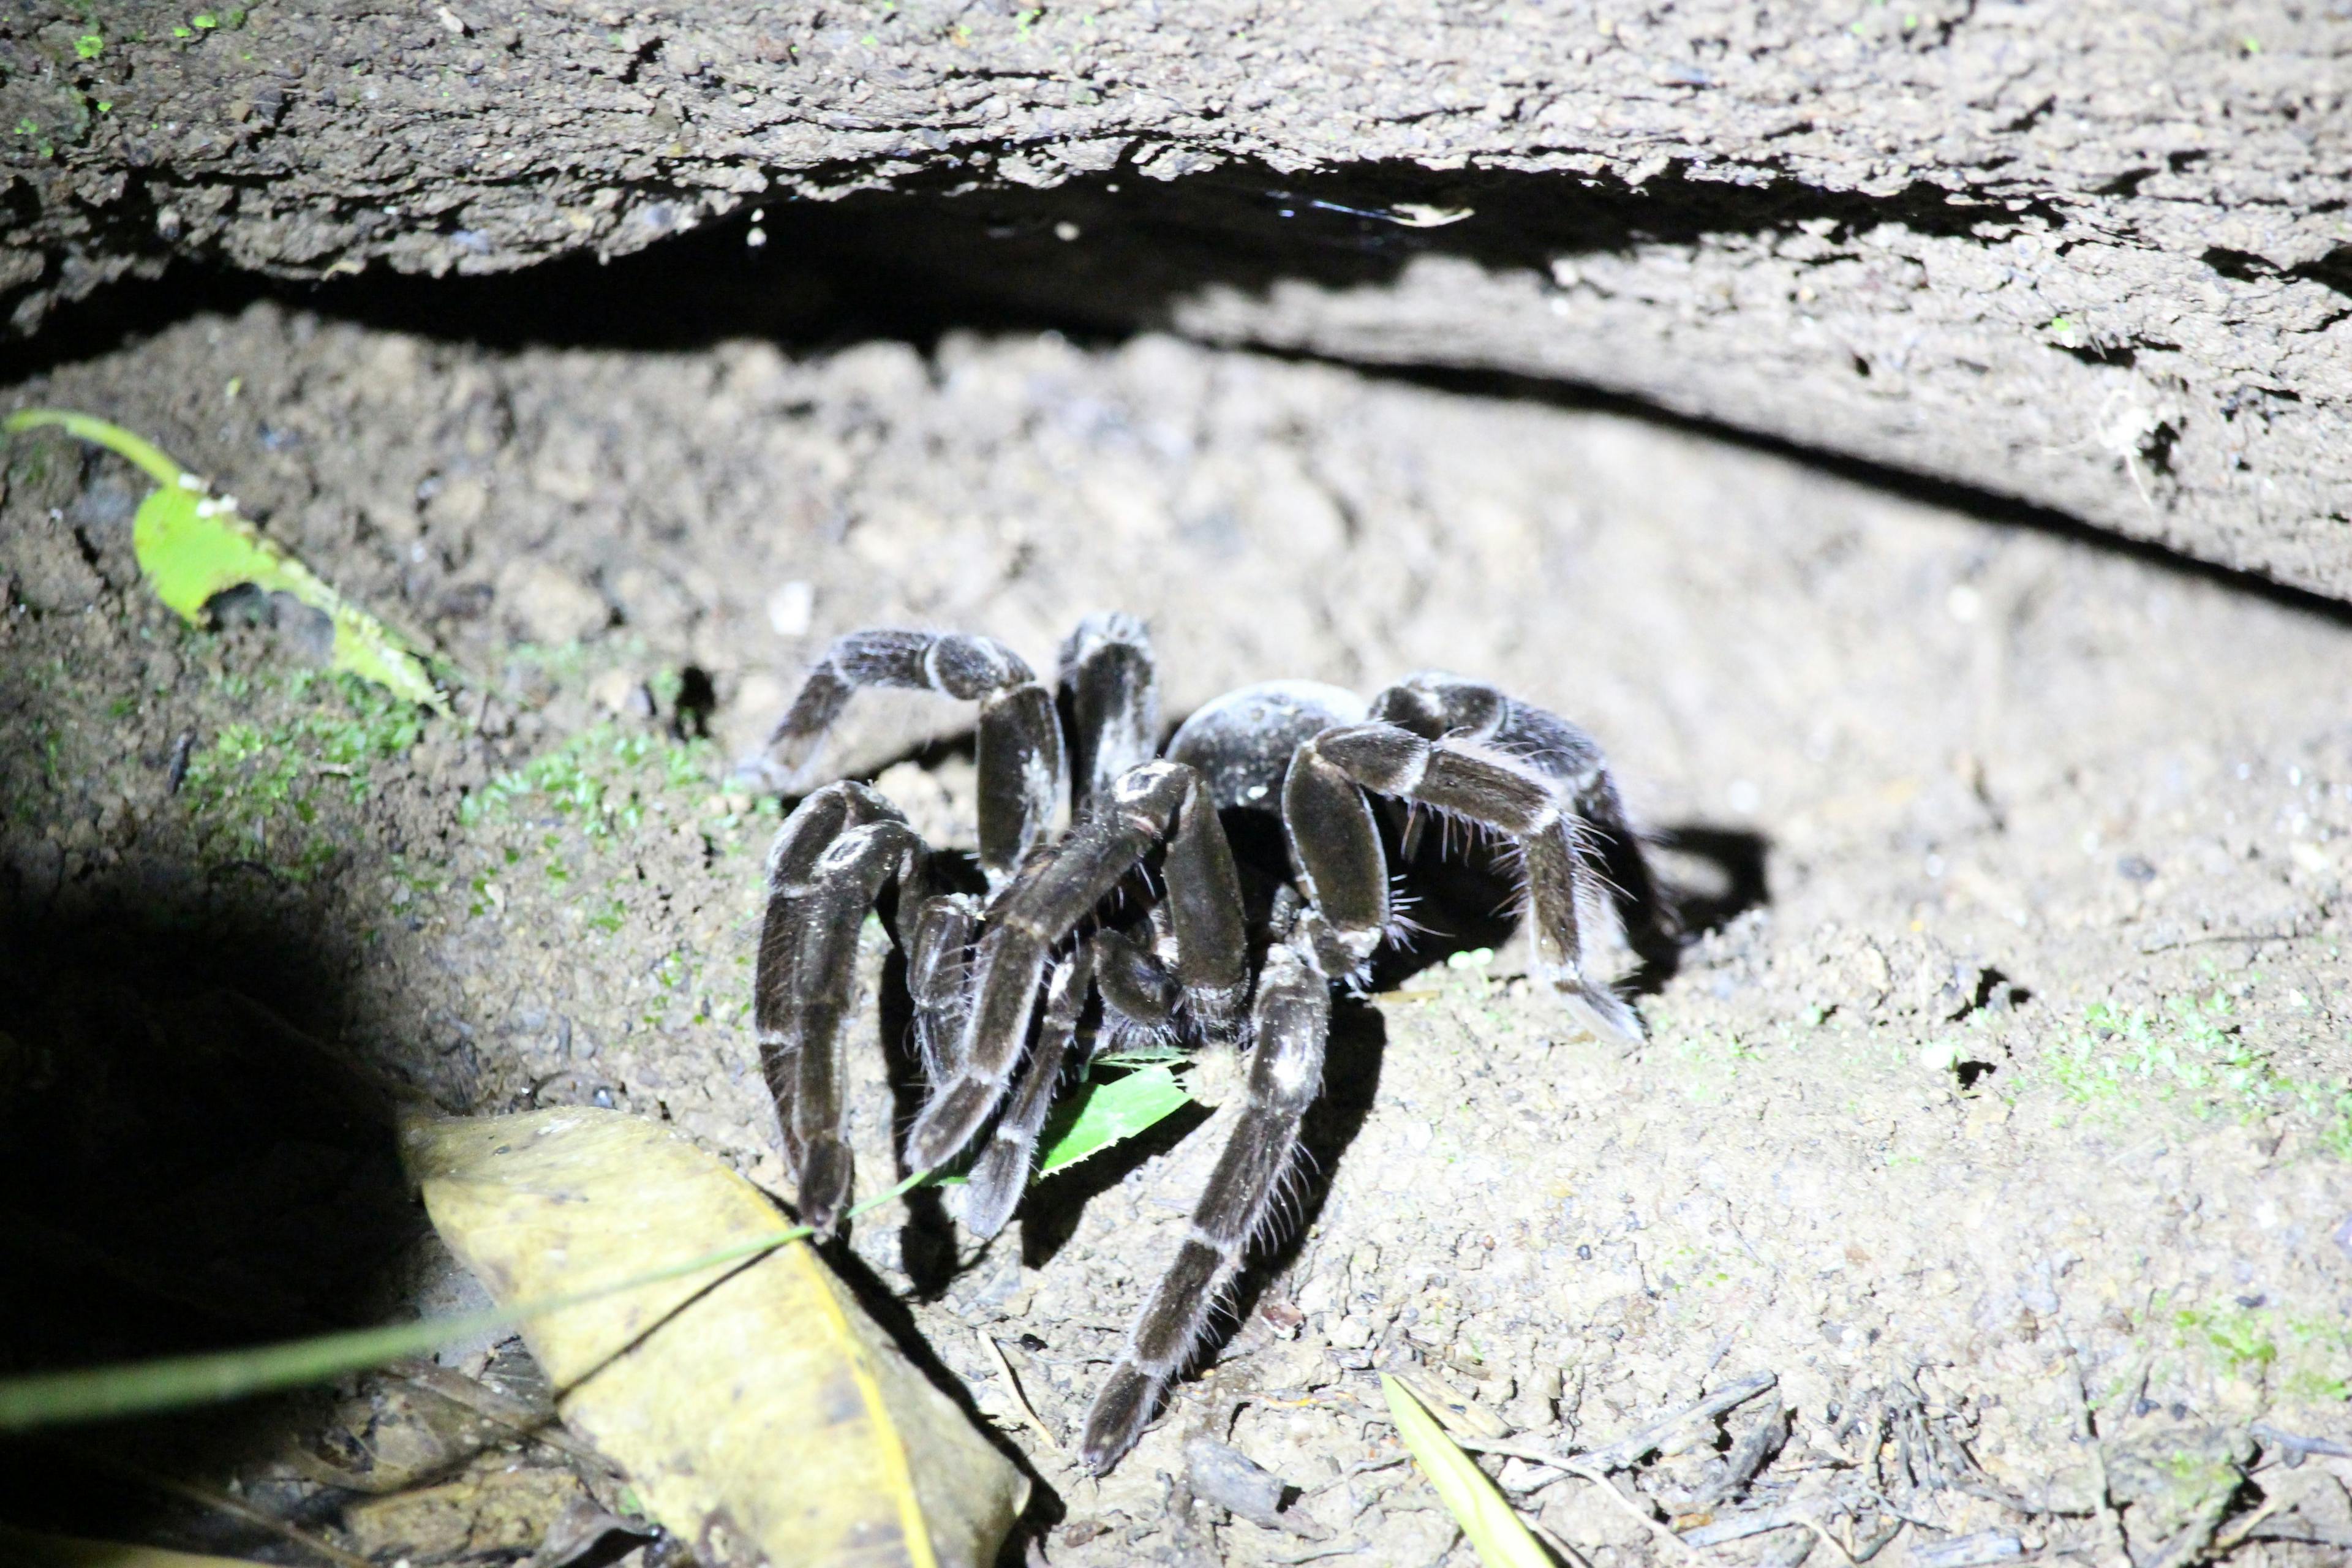 Listen coaxing a tarantula outside of its lair